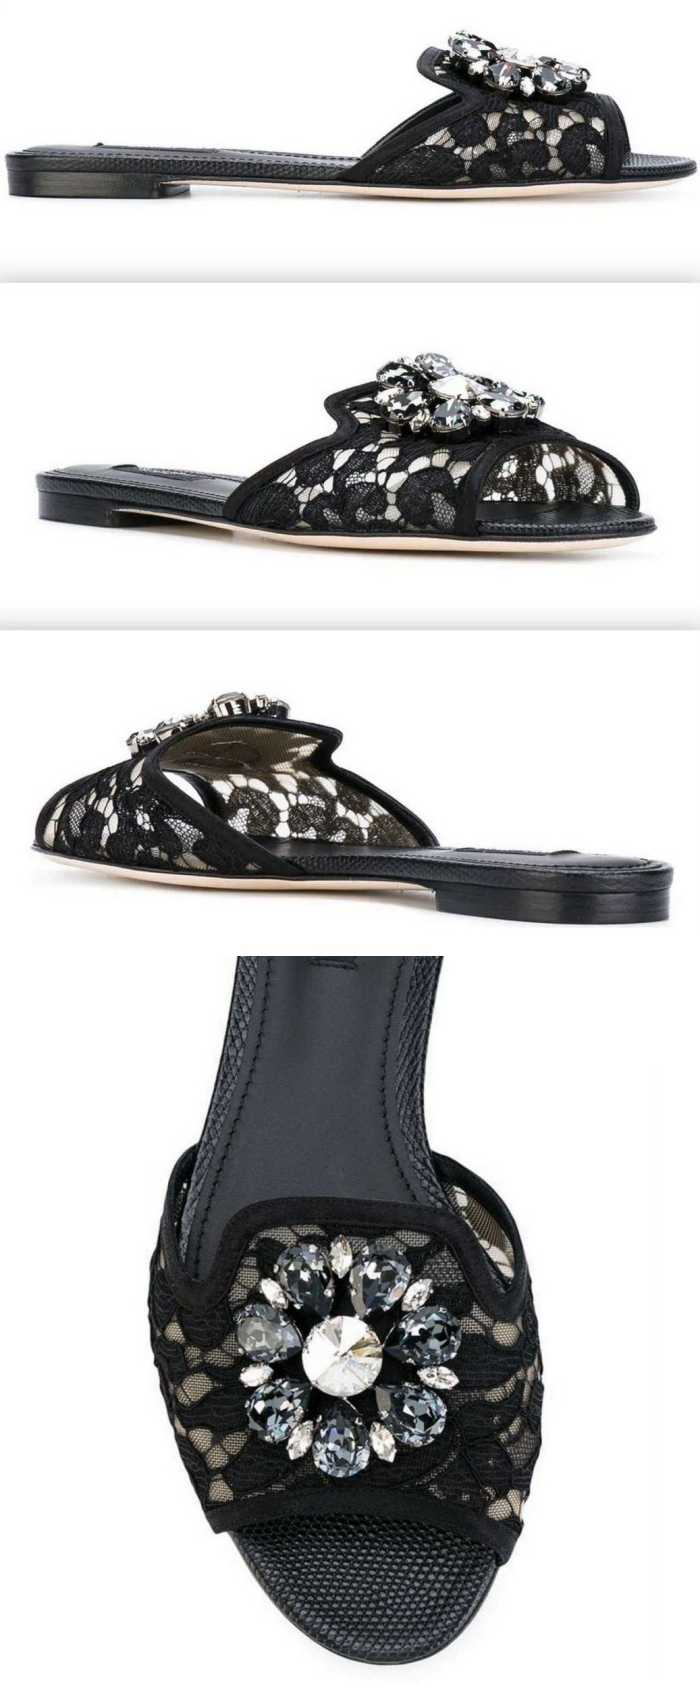 Bianca Embellished Flat Sandals, Black-DESIGNER INSPIRED FASHIONS-Flats,Sandals